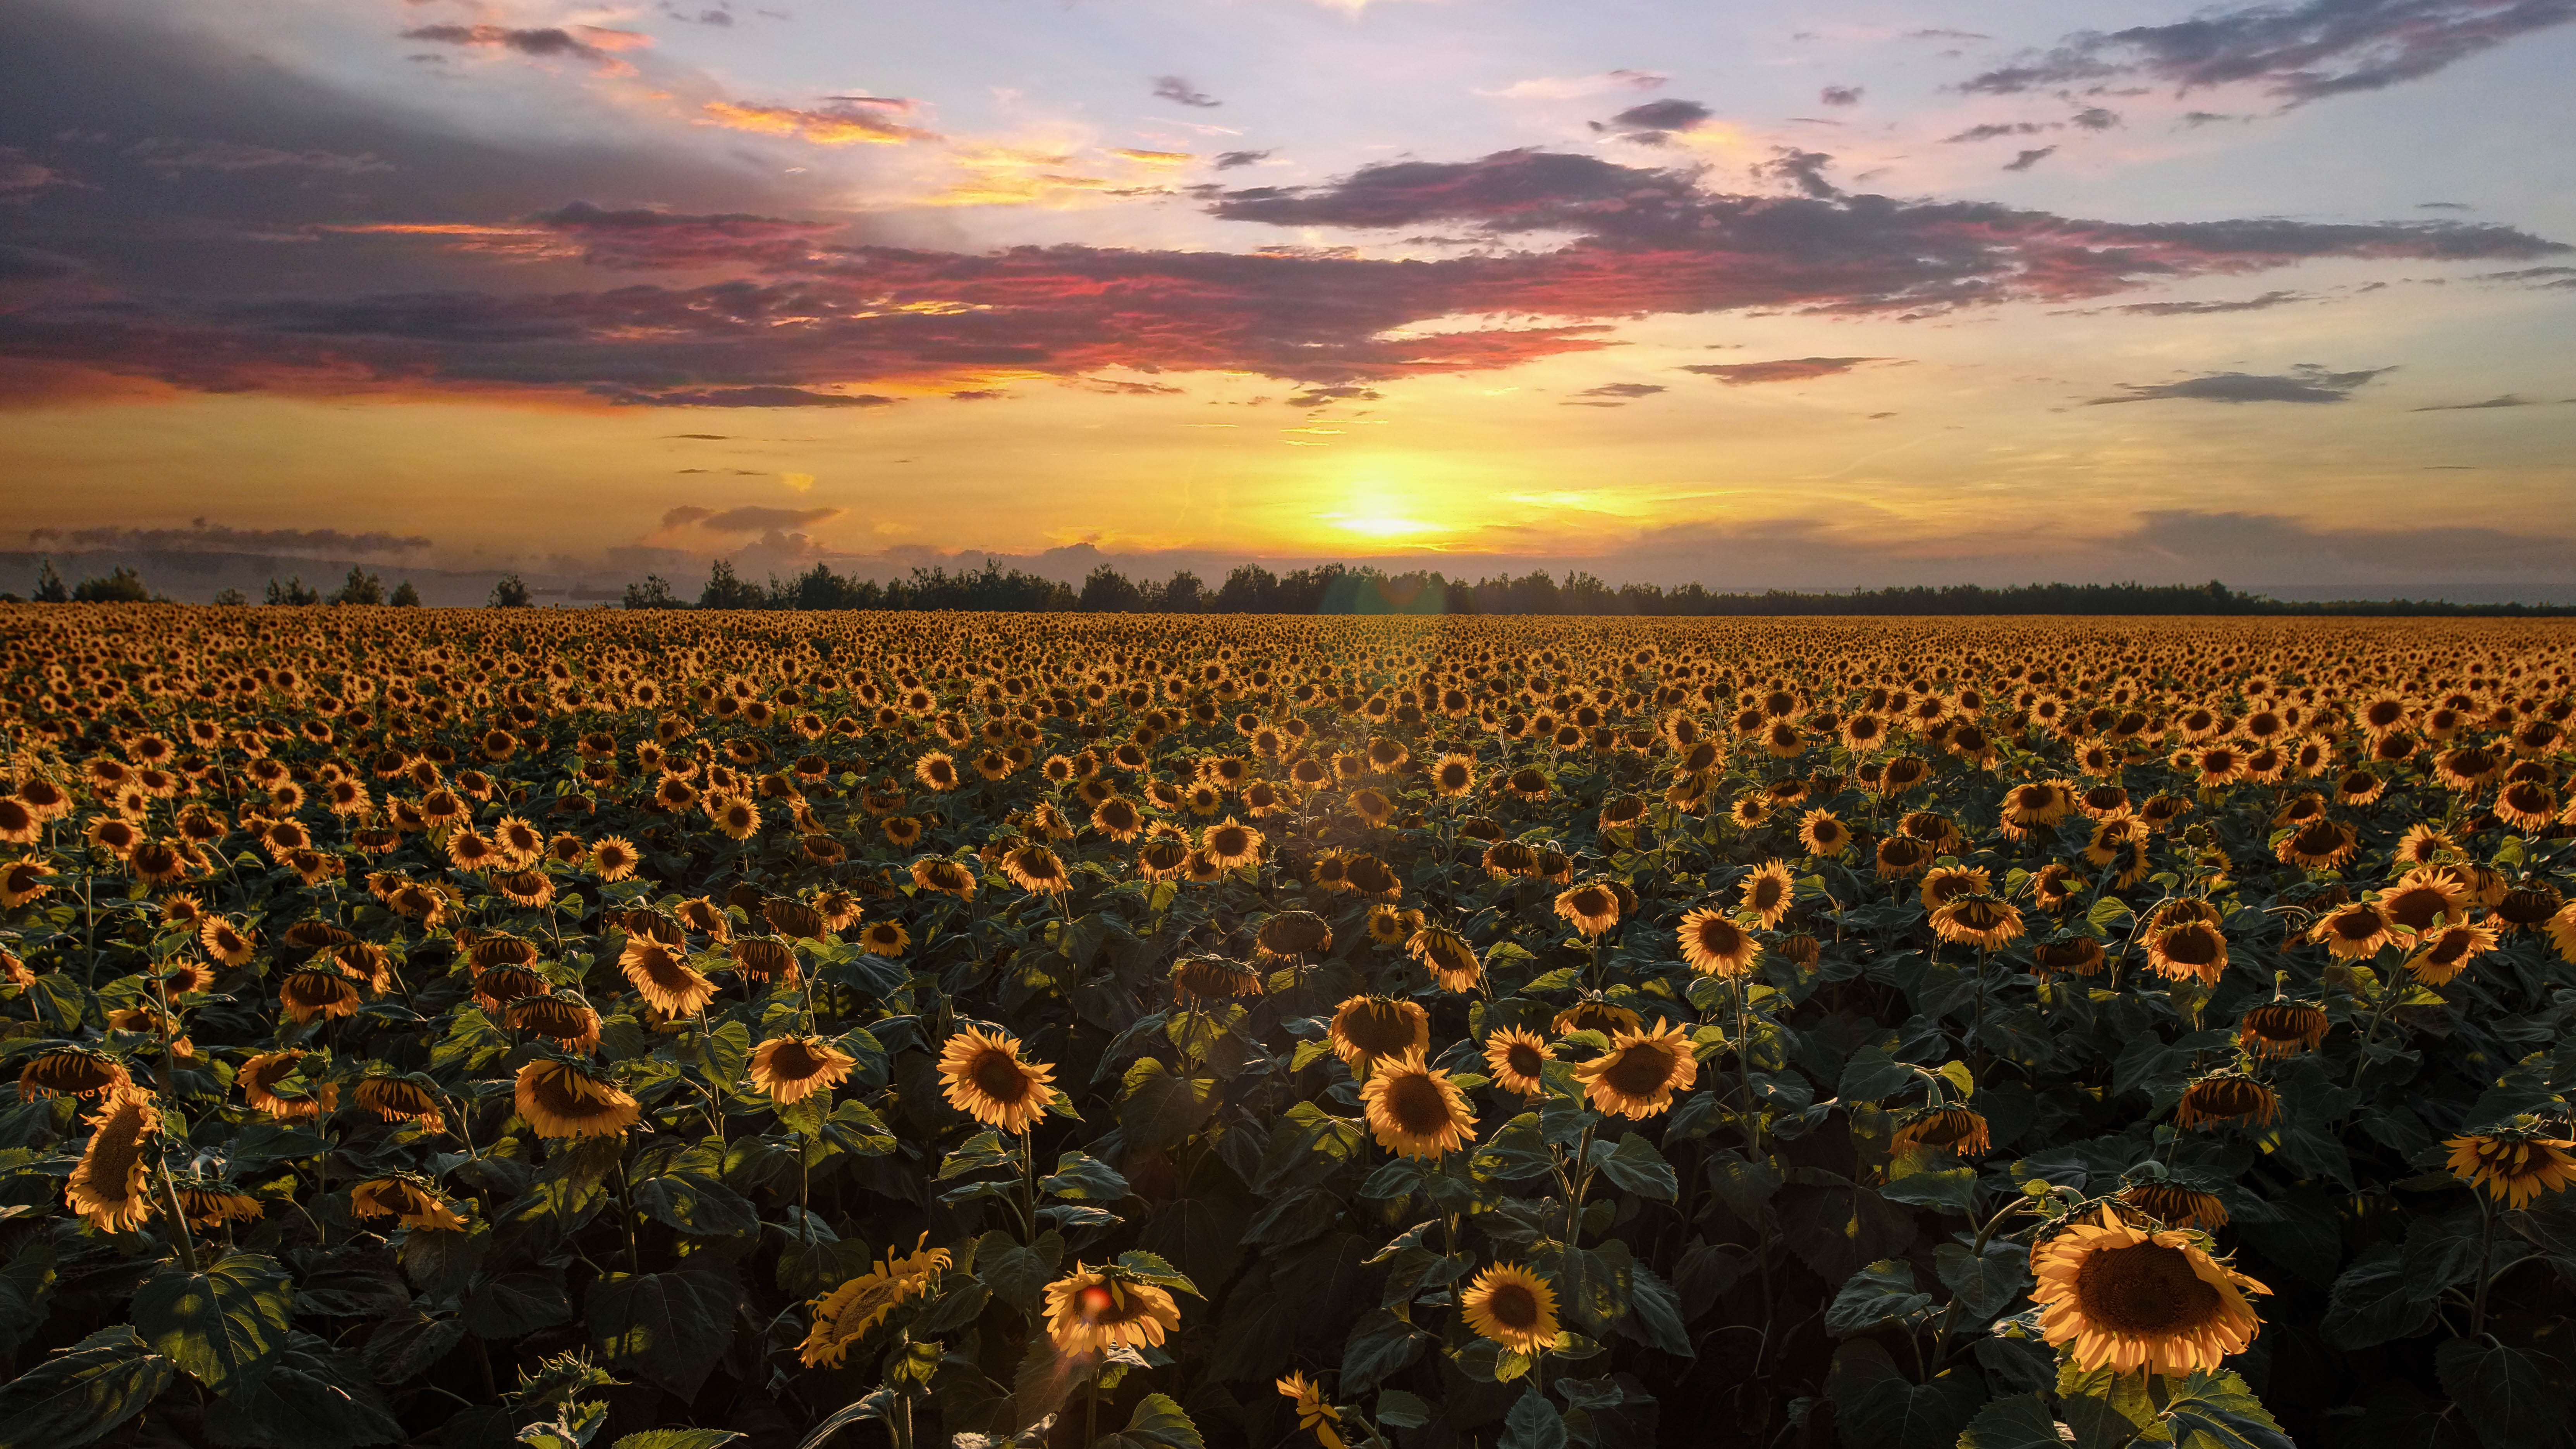 пейзаж, landscape, лето, summer, подсолнухи, sunflowers, Владимир Васильев